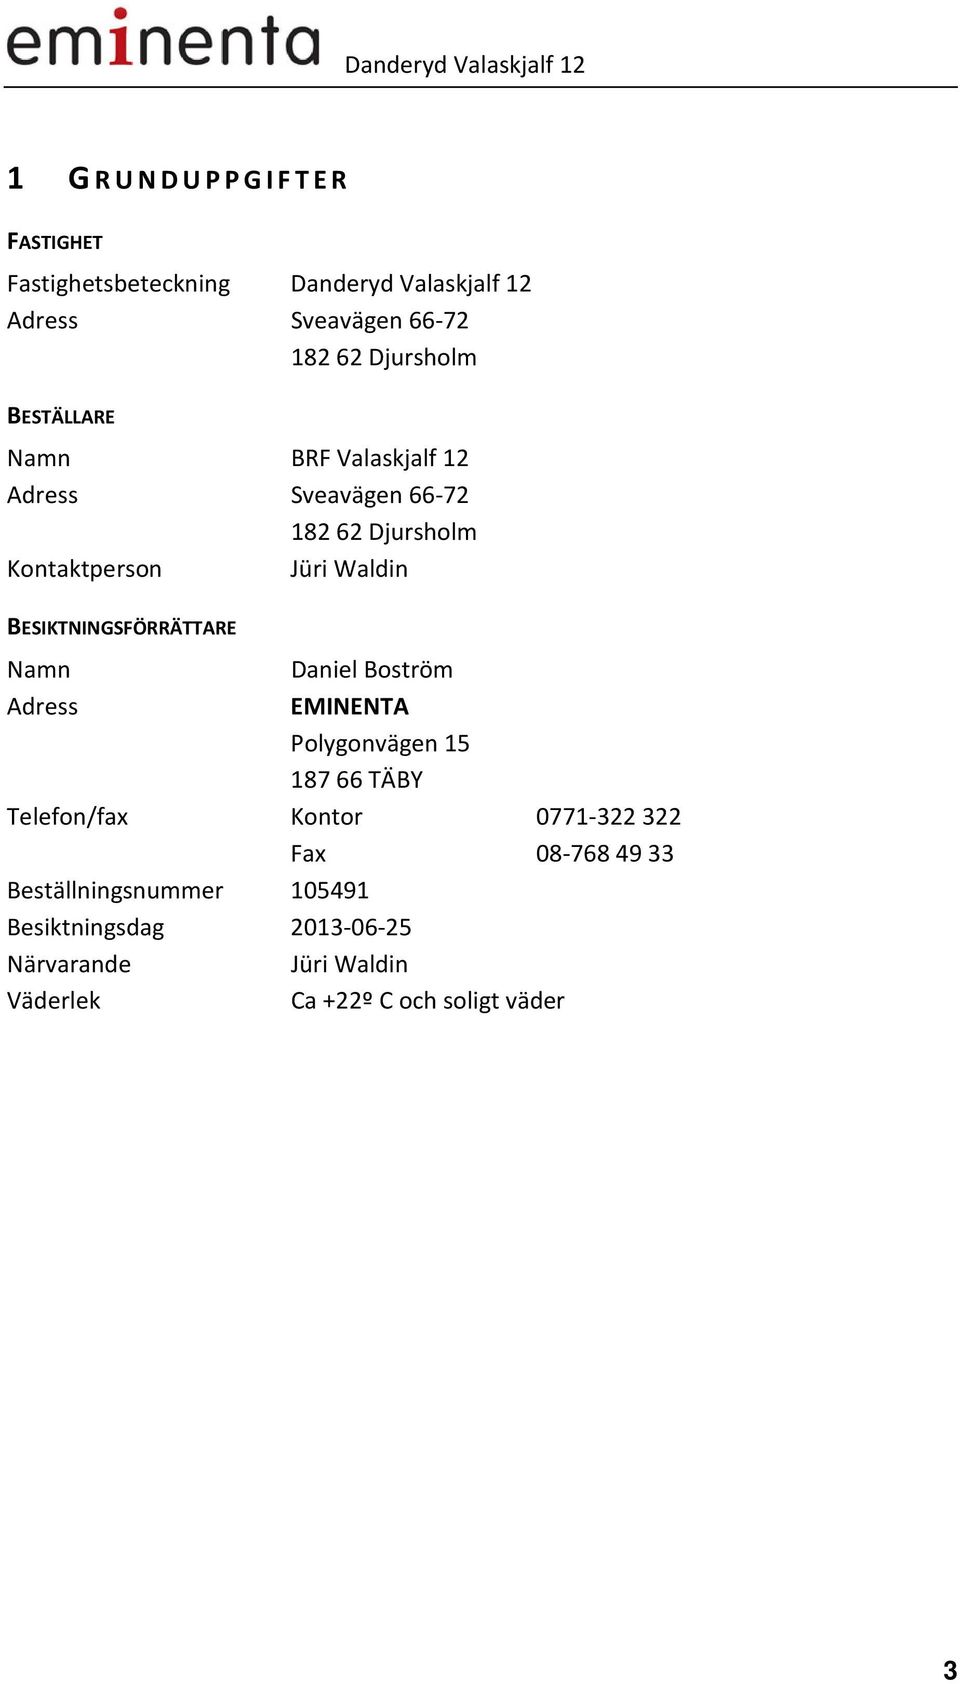 BESIKTNINGSFÖRRÄTTARE Namn Adress Daniel Boström EMINENTA Polygonvägen 15 18766 TÄBY Telefon/fax Kontor 0771-322322